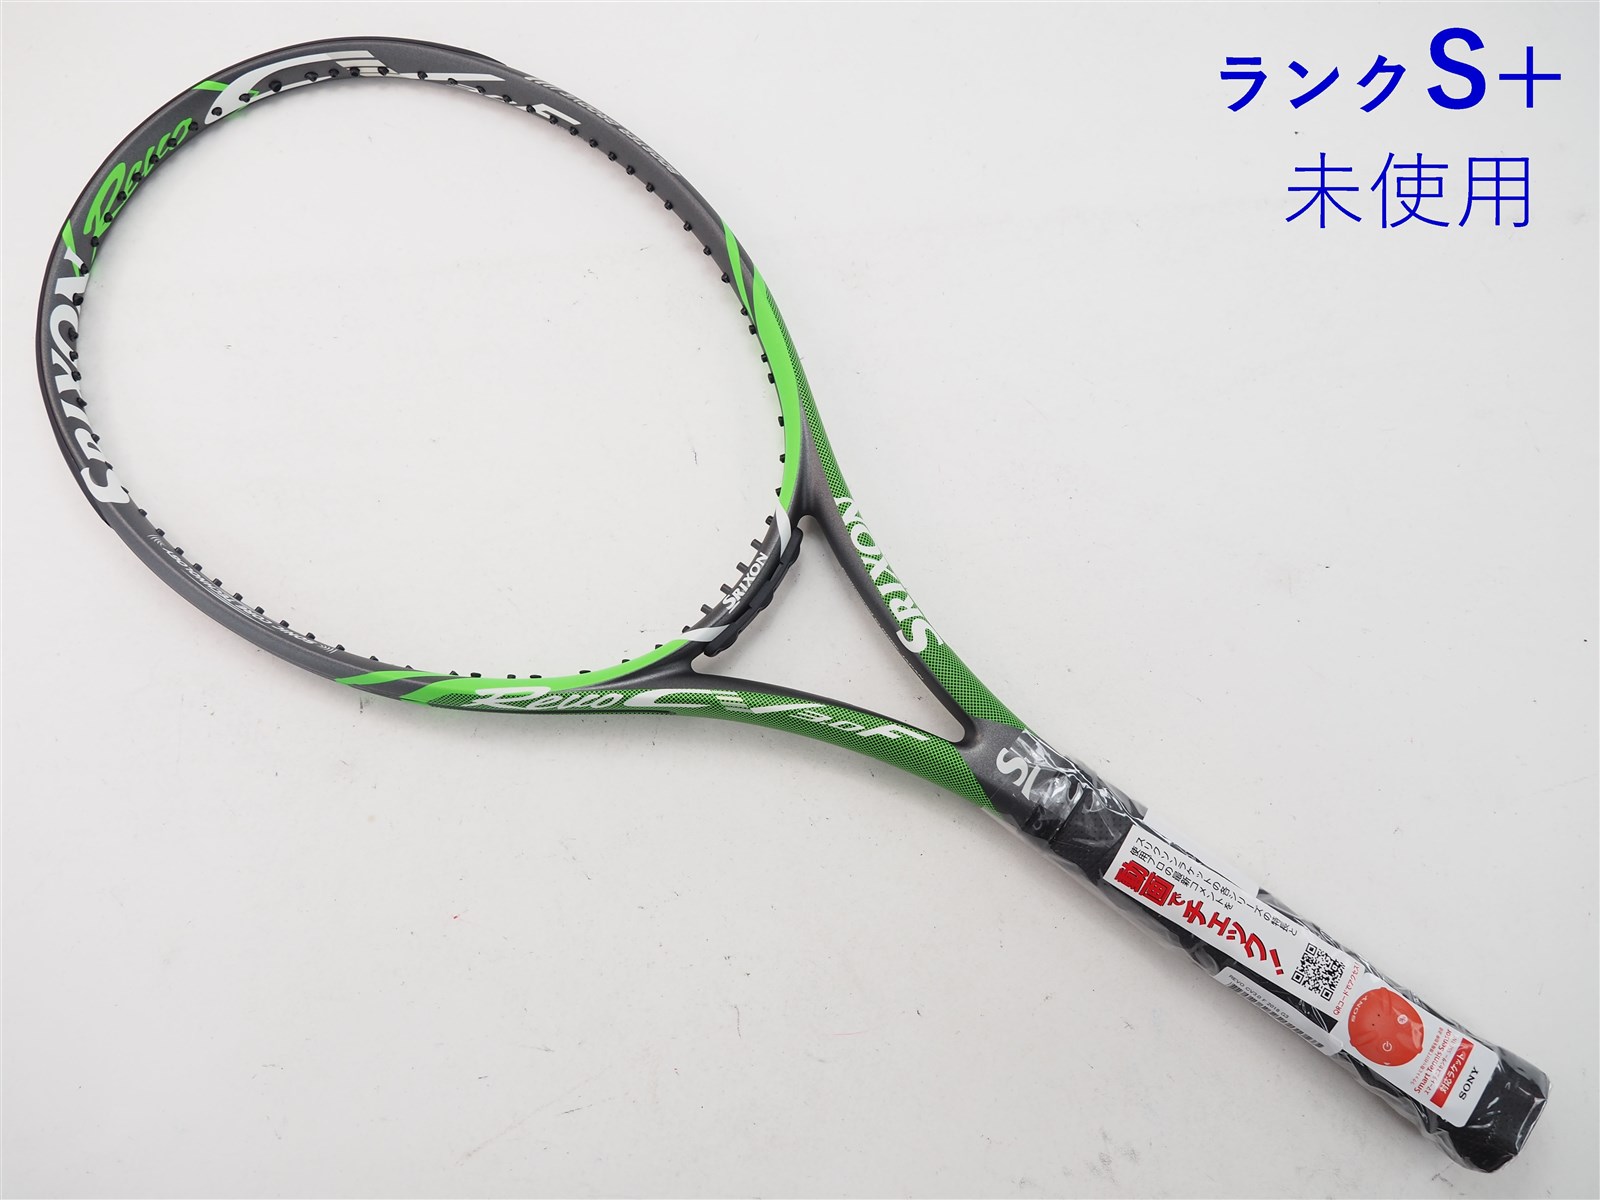 テニスラケット スリクソン レヴォ CV 5.0 OS 2018年モデル (G2)SRIXON